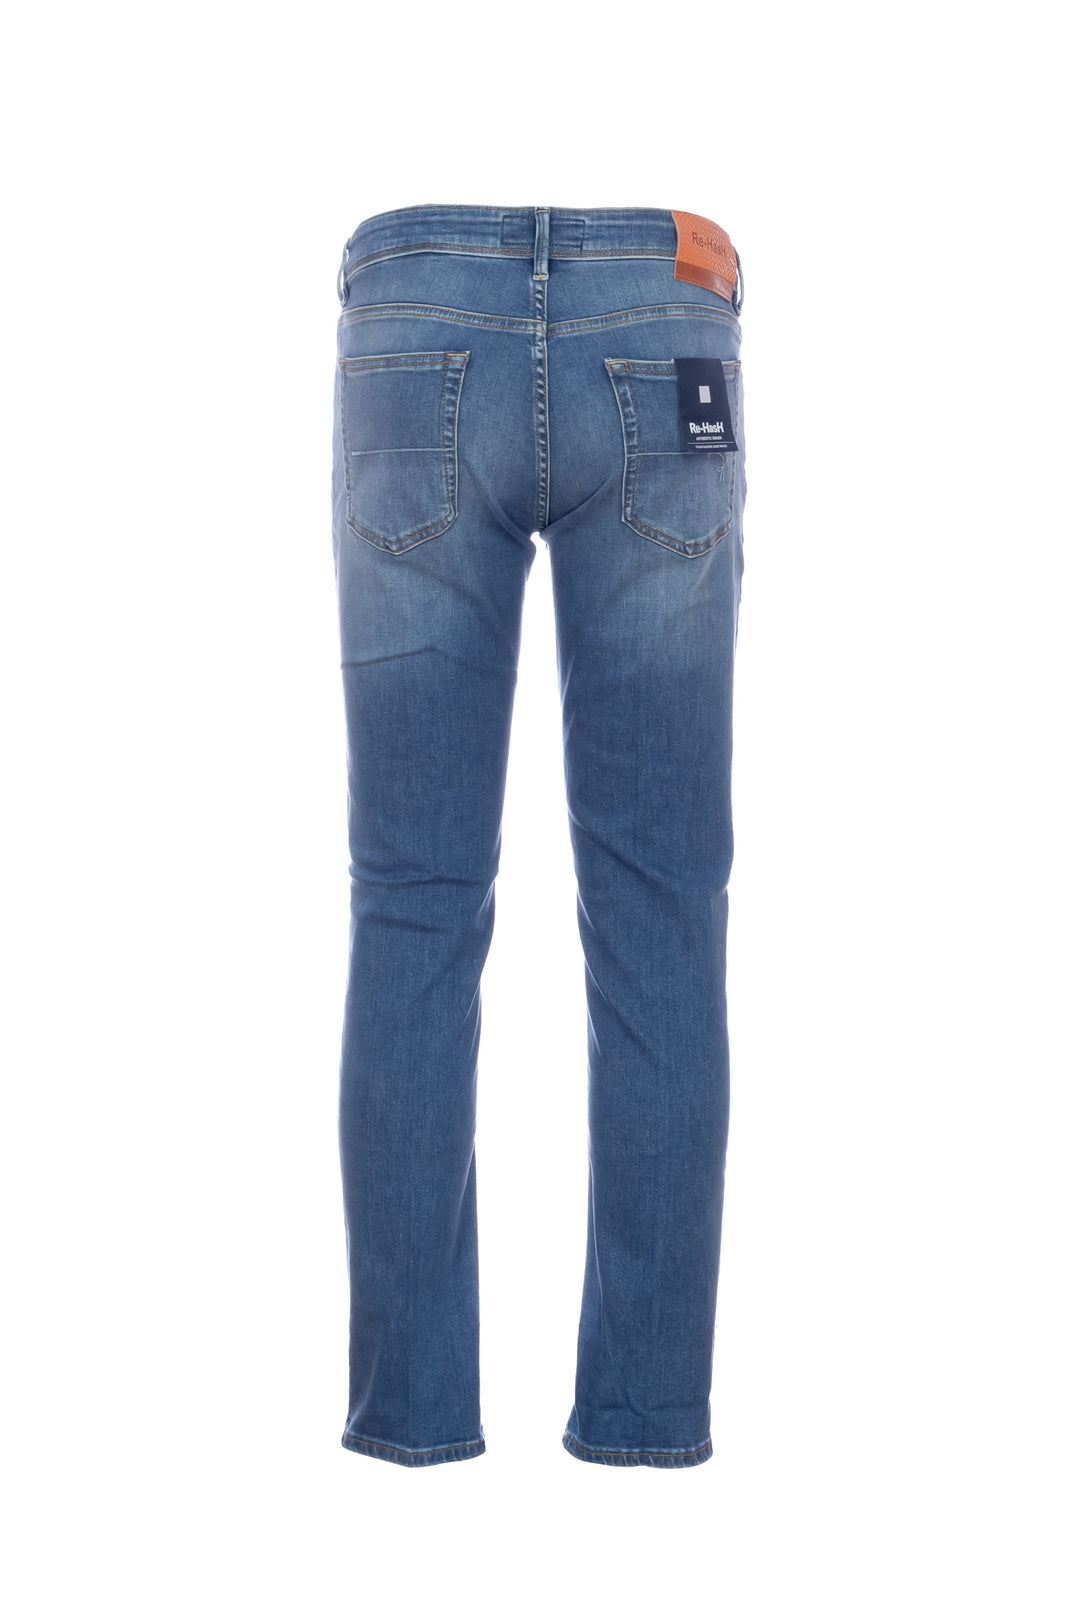 RE-HASH Jeans 5 tasche “RUBENS-30” in denim stretch lavaggio chiaro - Mancinelli 1954